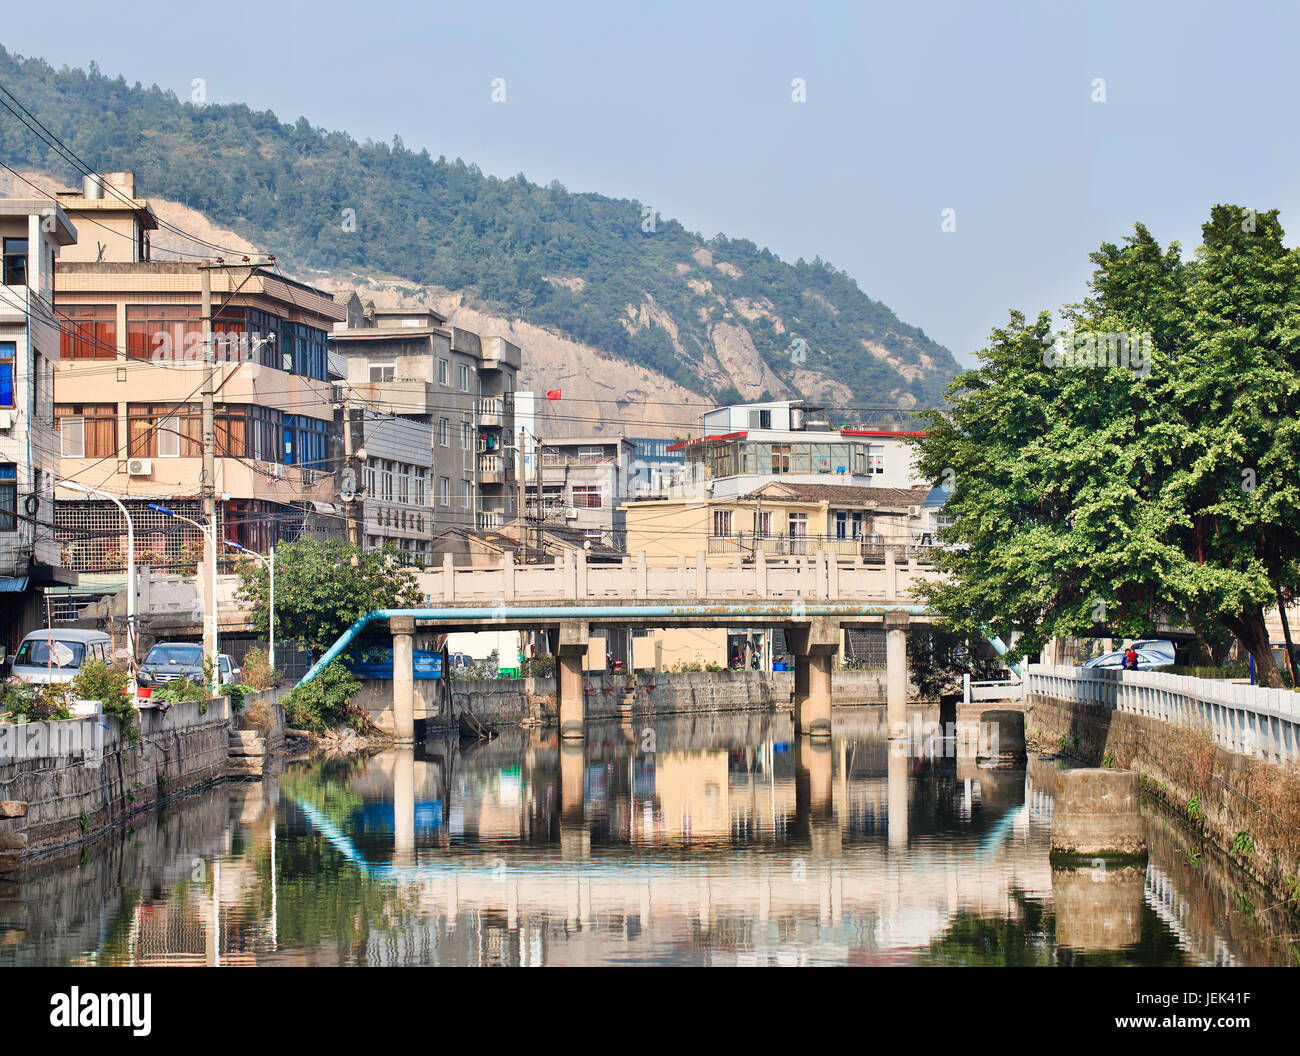 Voie navigable avec pont dans le vieux quartier traditionnel, Wenzhou, province de Zhejiang, Chine Banque D'Images